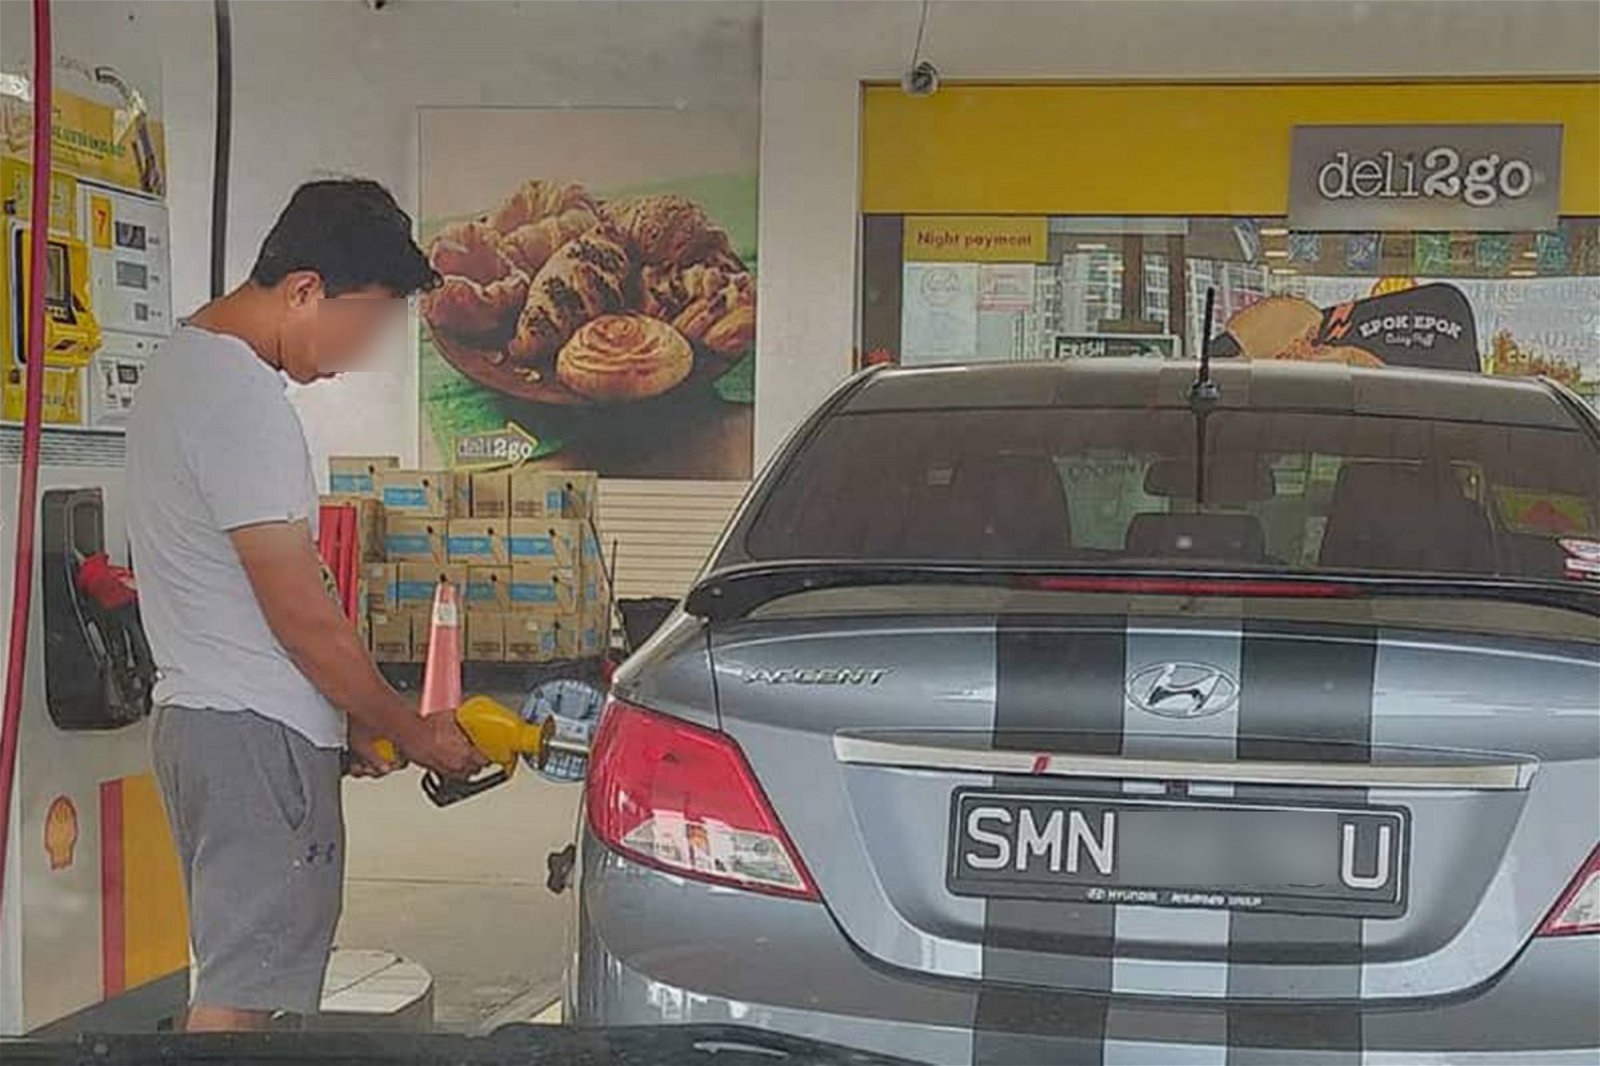 一名男子将RON95汽油的黄色油枪插入新加坡注册车辆添油，被后方车辆内的车主拍下照片放上社交媒体讨伐。 （图取自社交媒体）